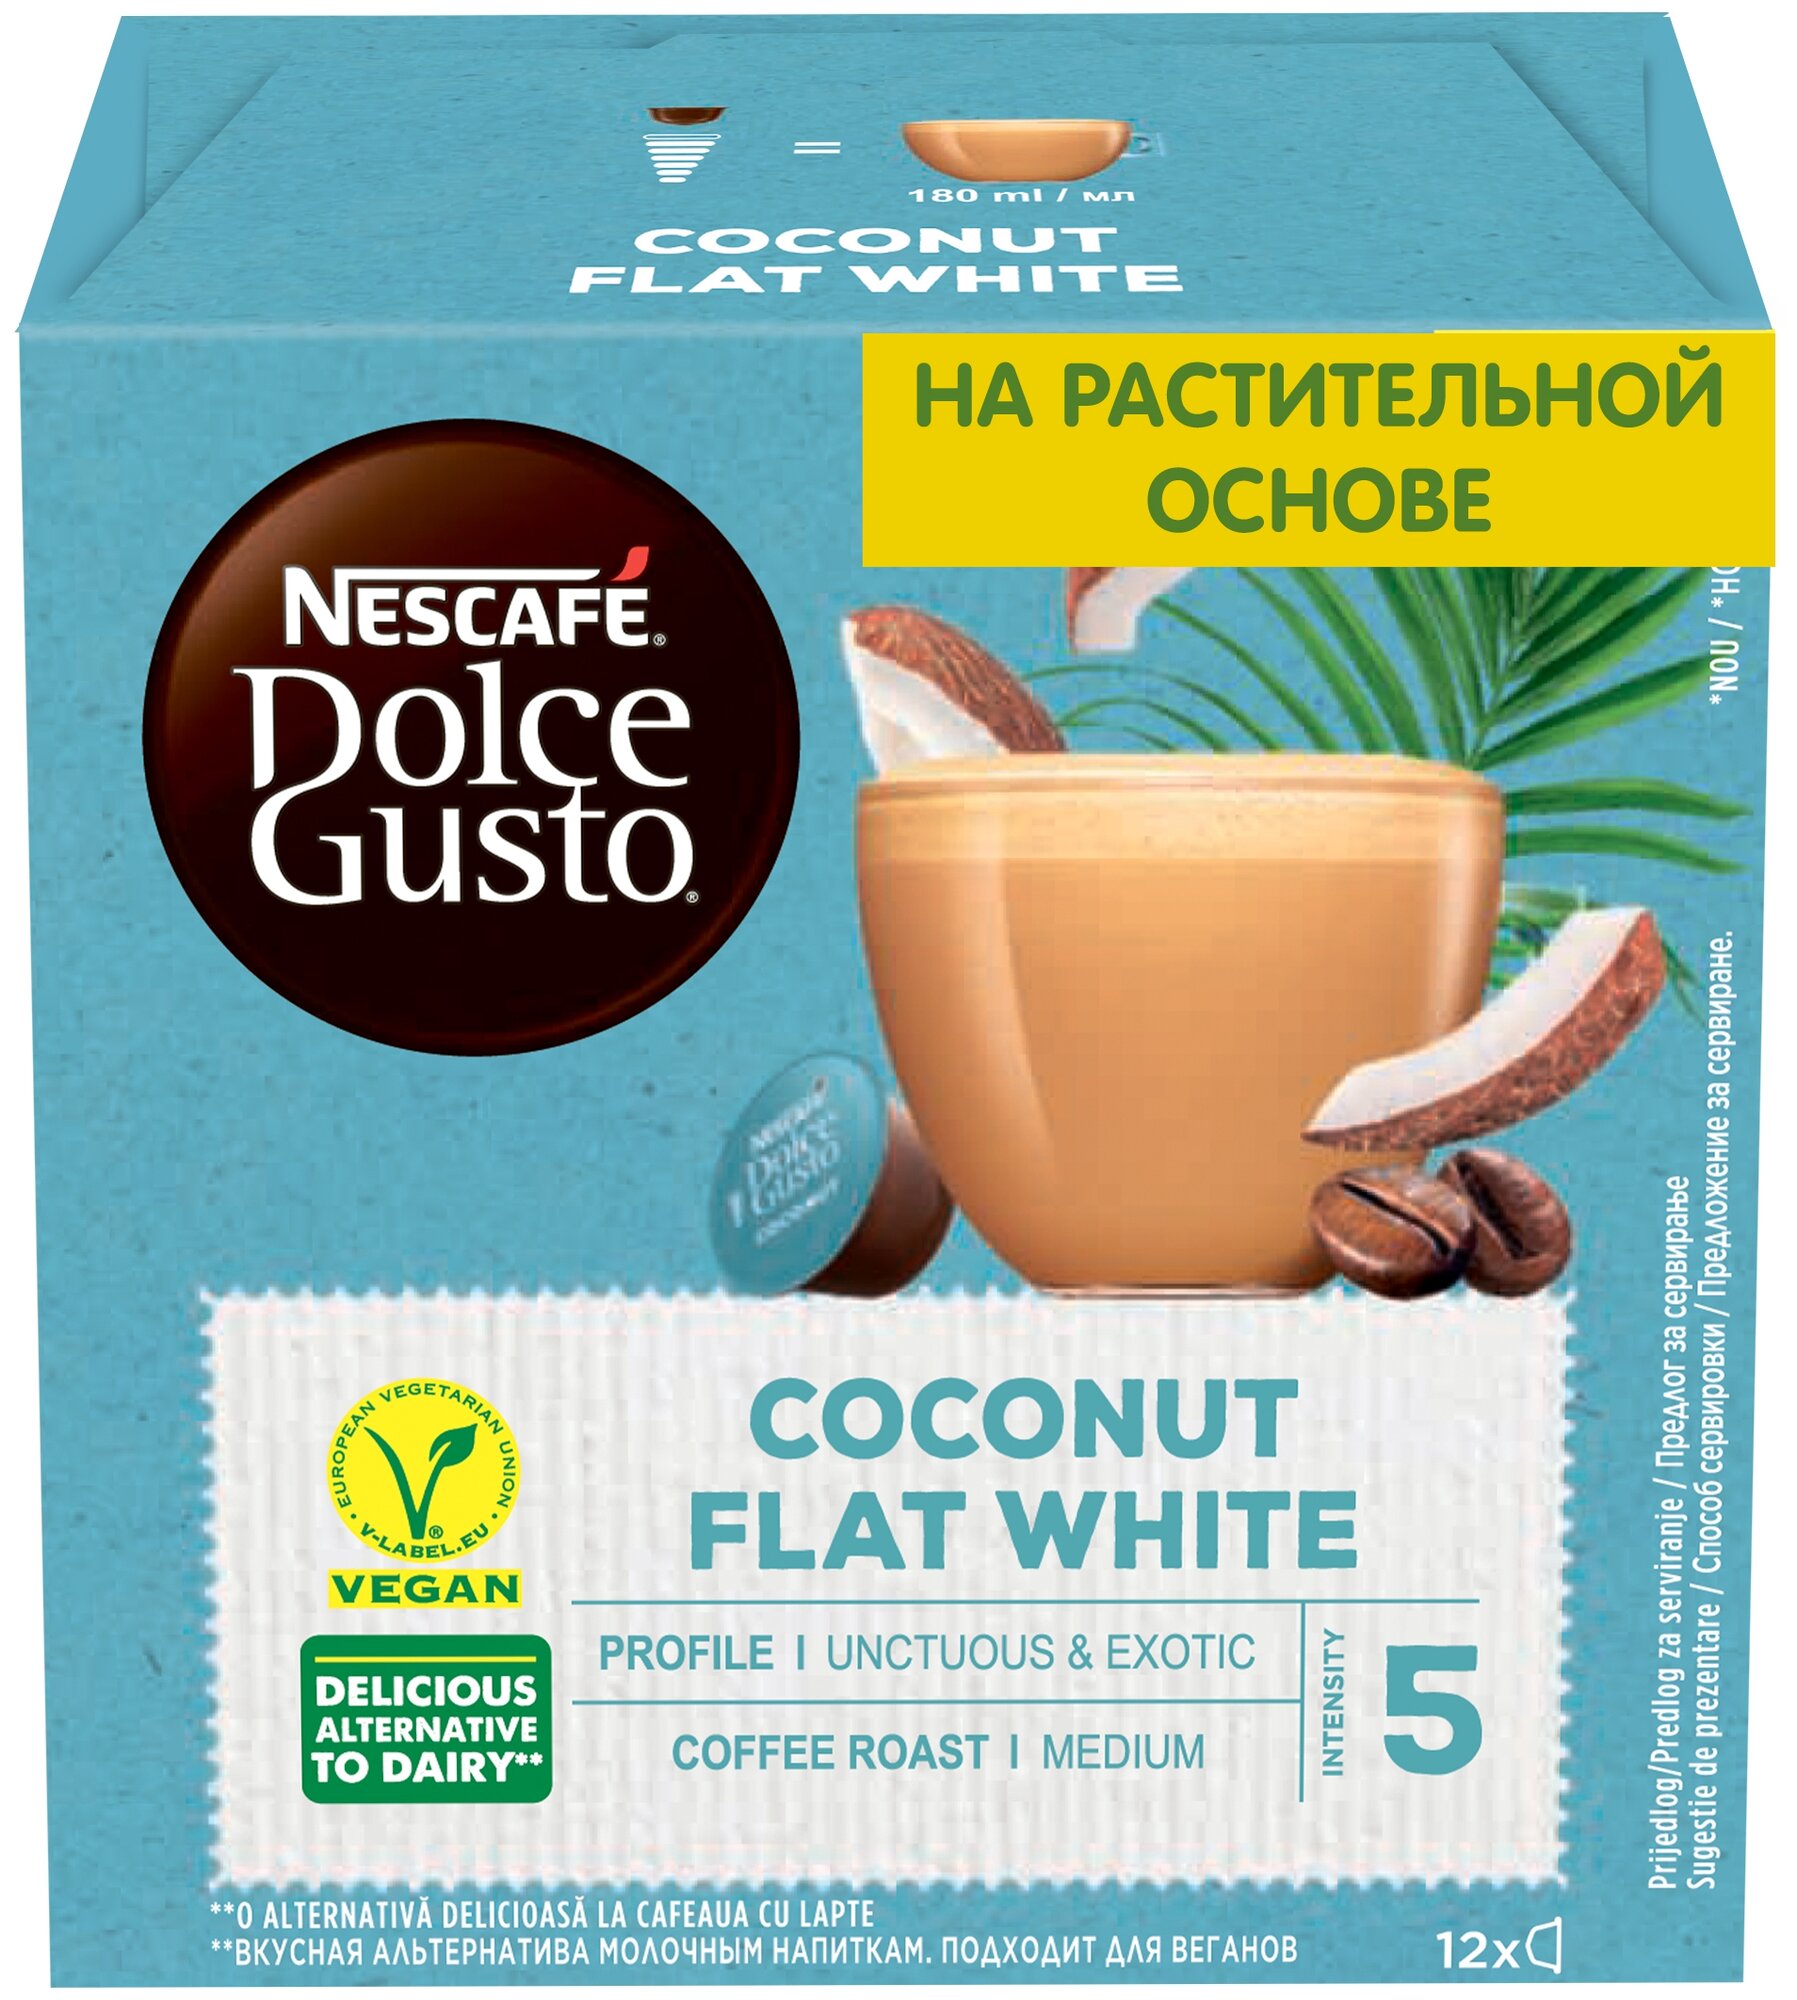 Кофе в капсулах Nescafe Dolce Gusto Флэт Уайт кокосовый, 12 кап/уп ,1 уп. - фотография № 1